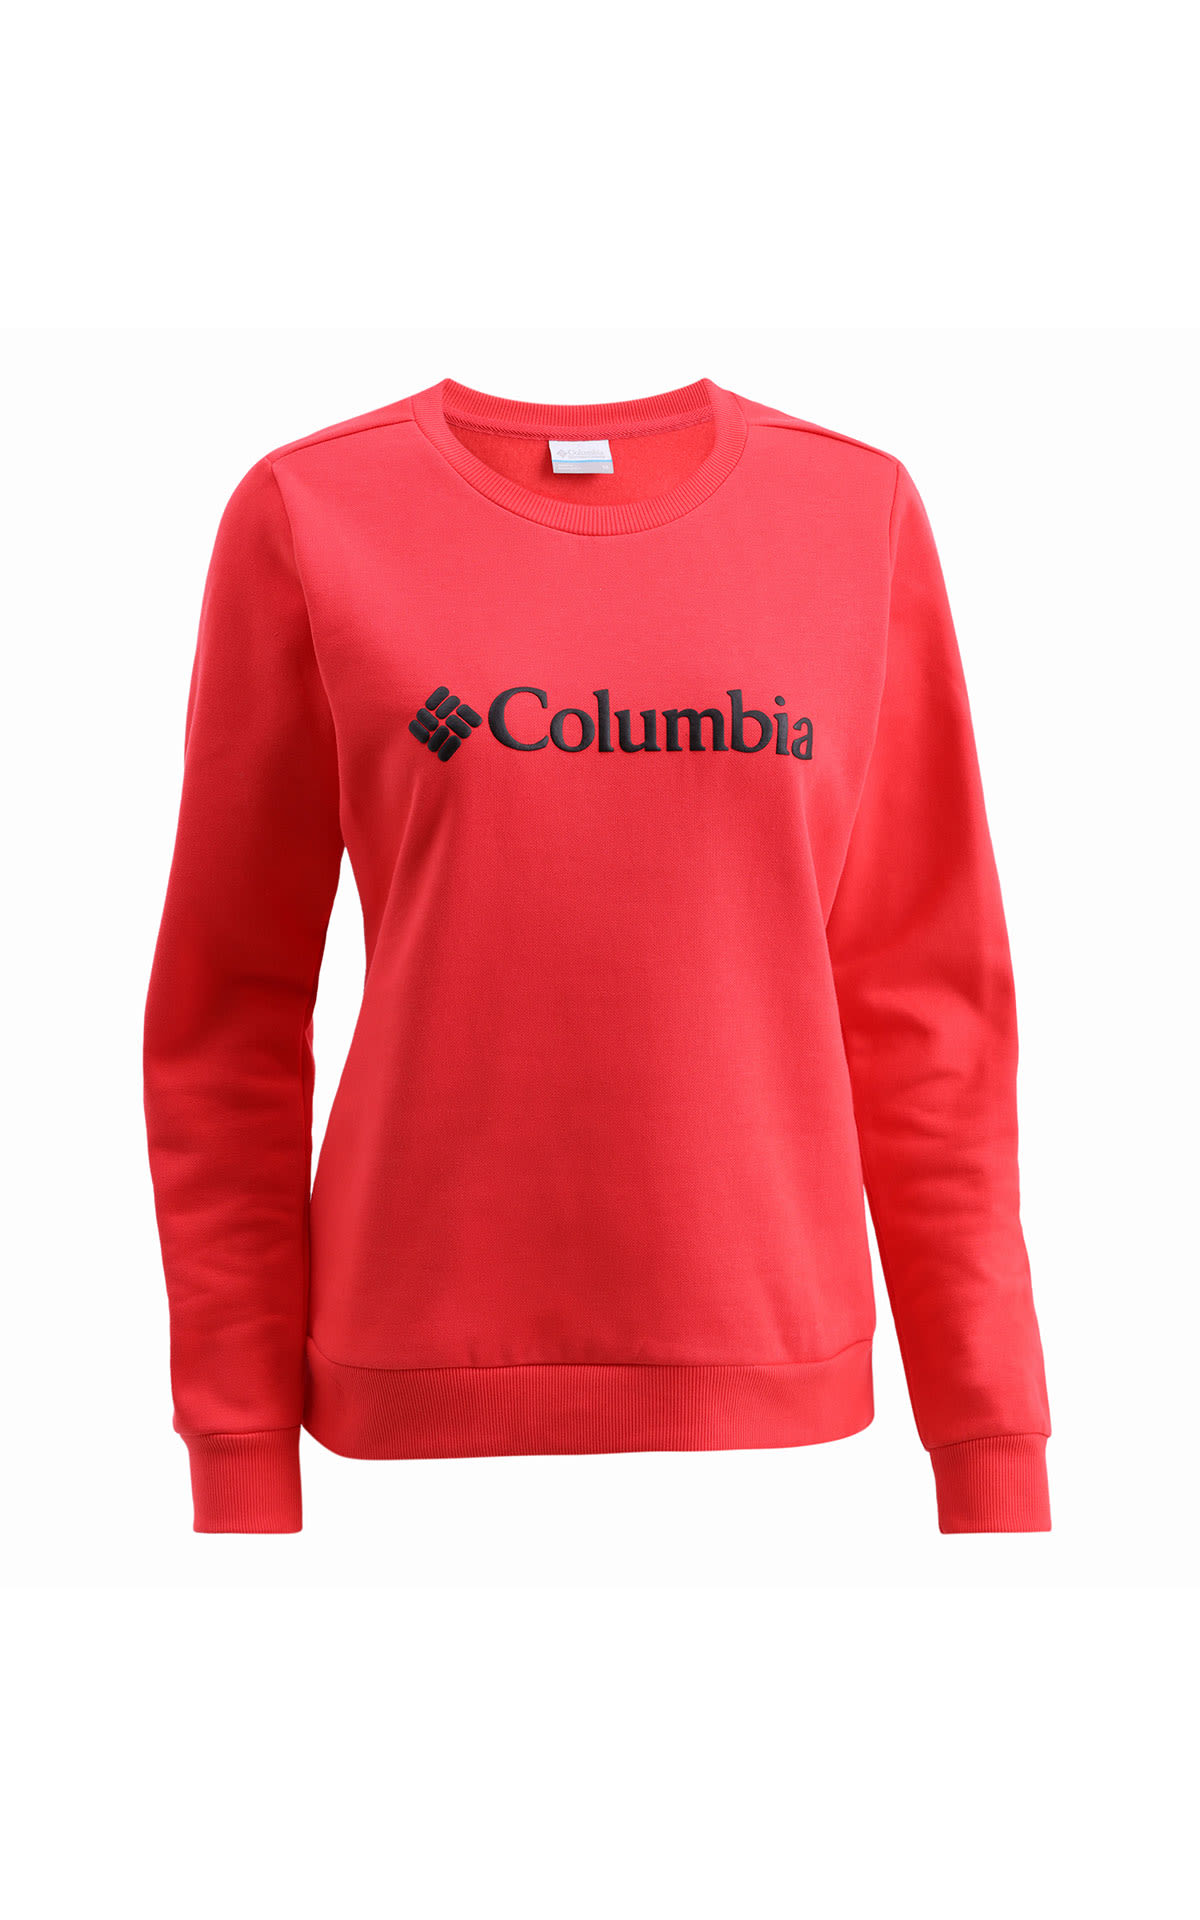 Sudadera roja con logo de la marca Columbia